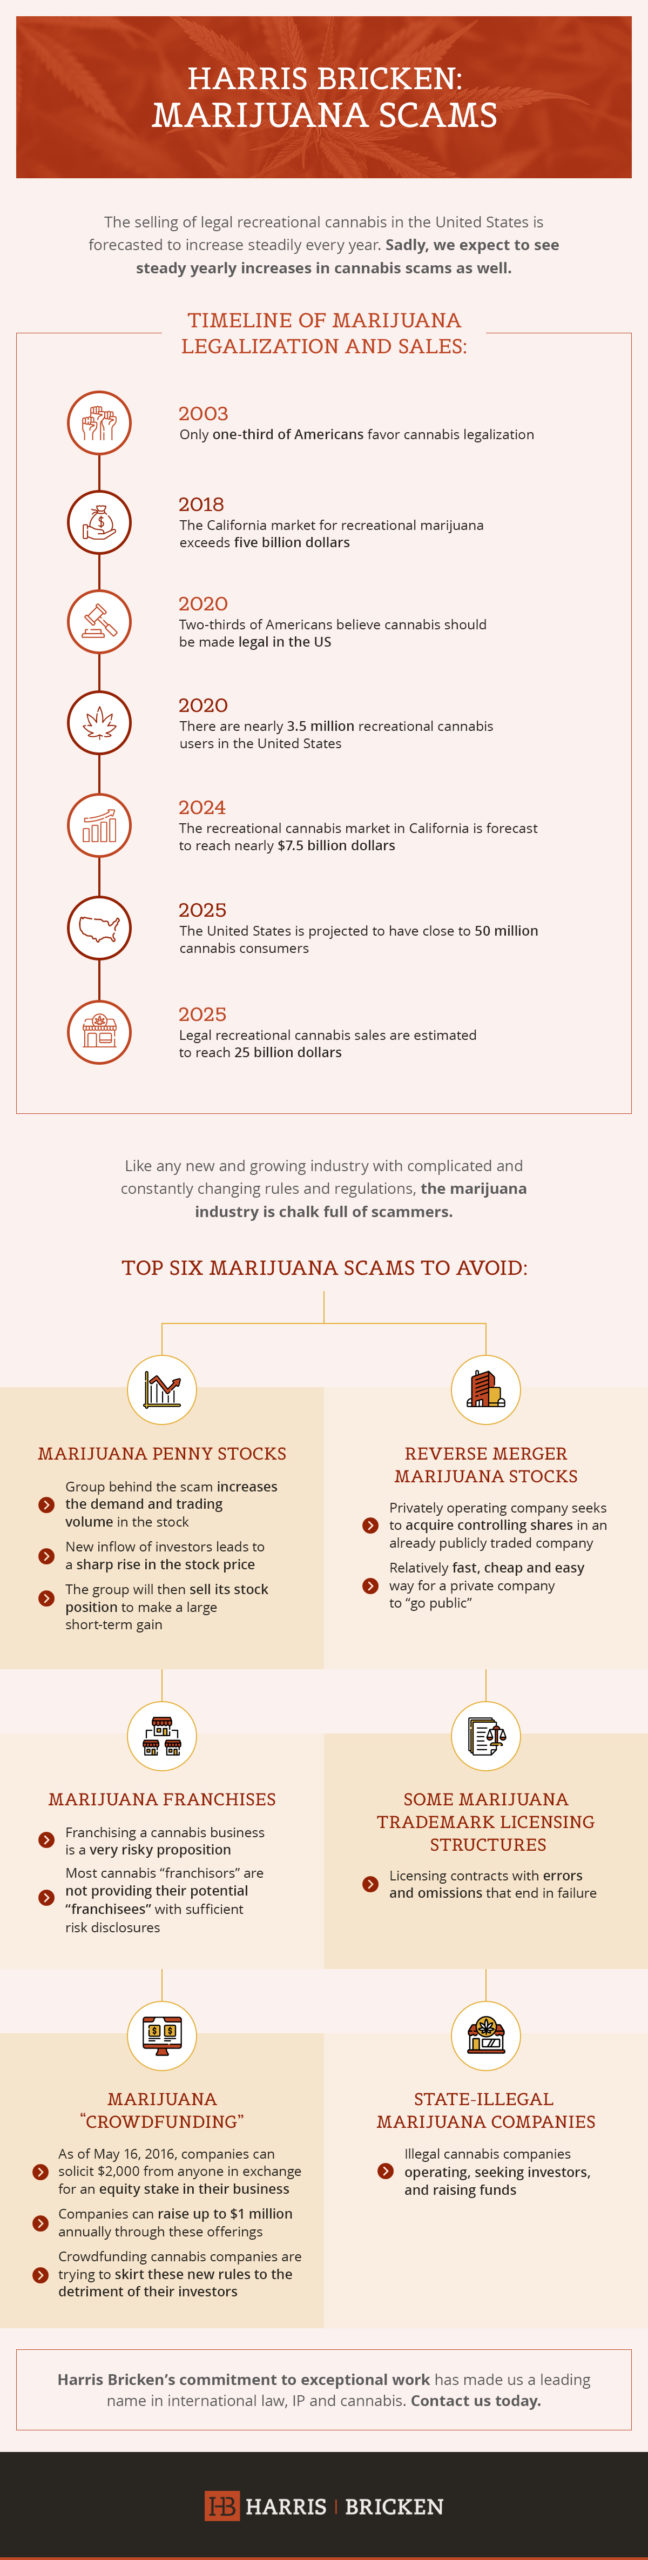 Marijuana Scams Infographic